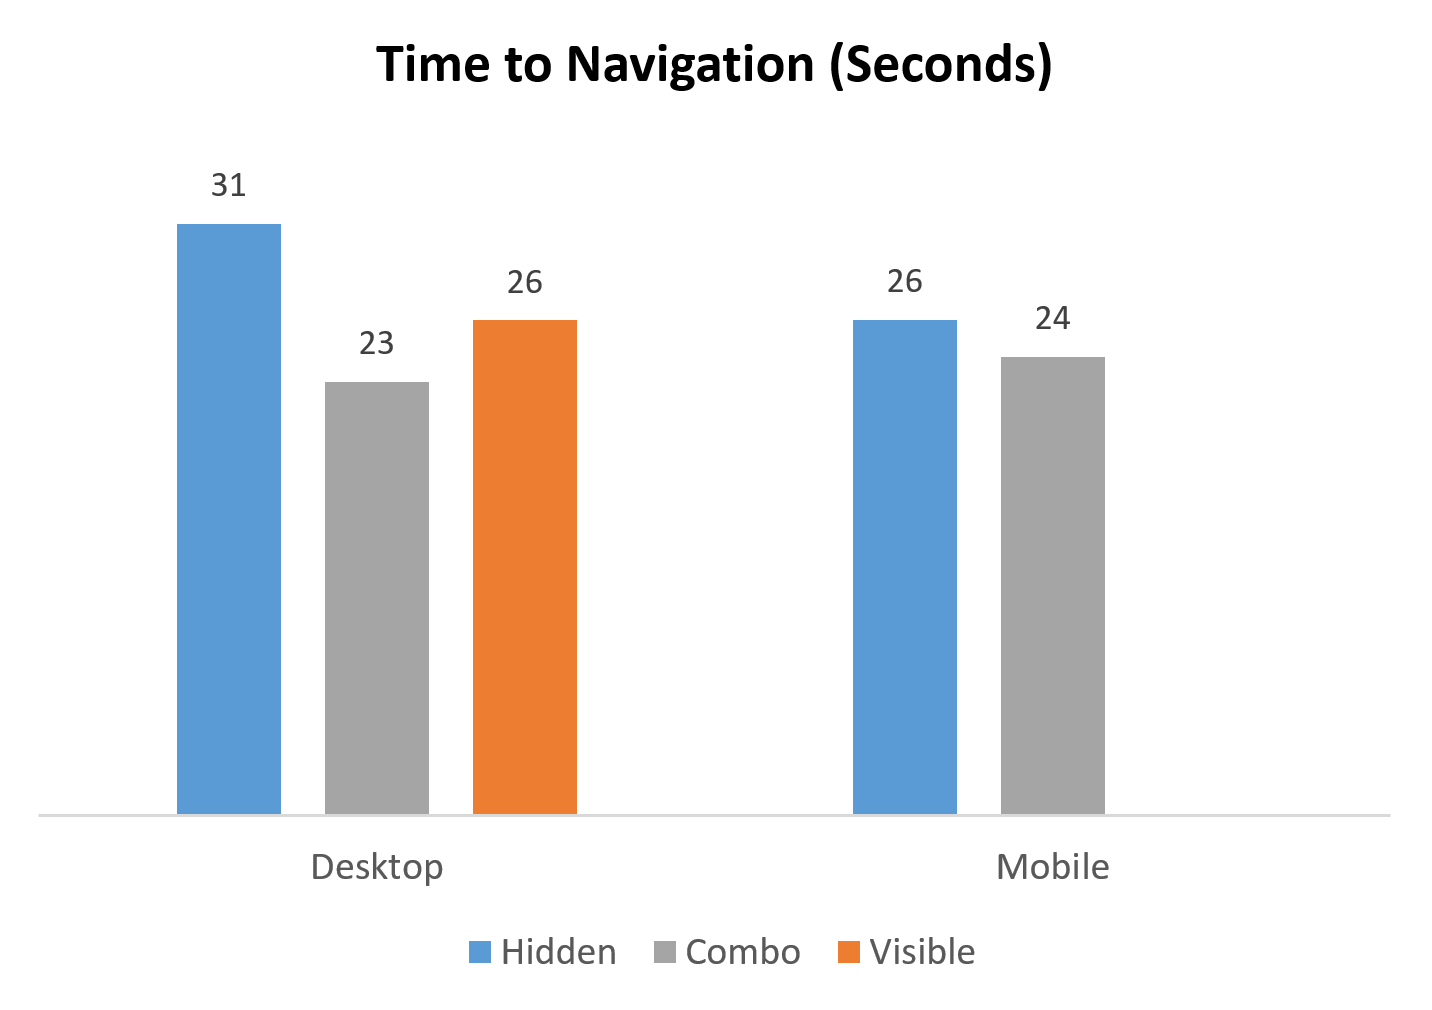 На десктопах, участникам потребовалось на 5-7 секунд больше, чтобы начать использовать скрытую навигацию. На мобильных устройствах, эта разница была меньше (около 2 секунд).